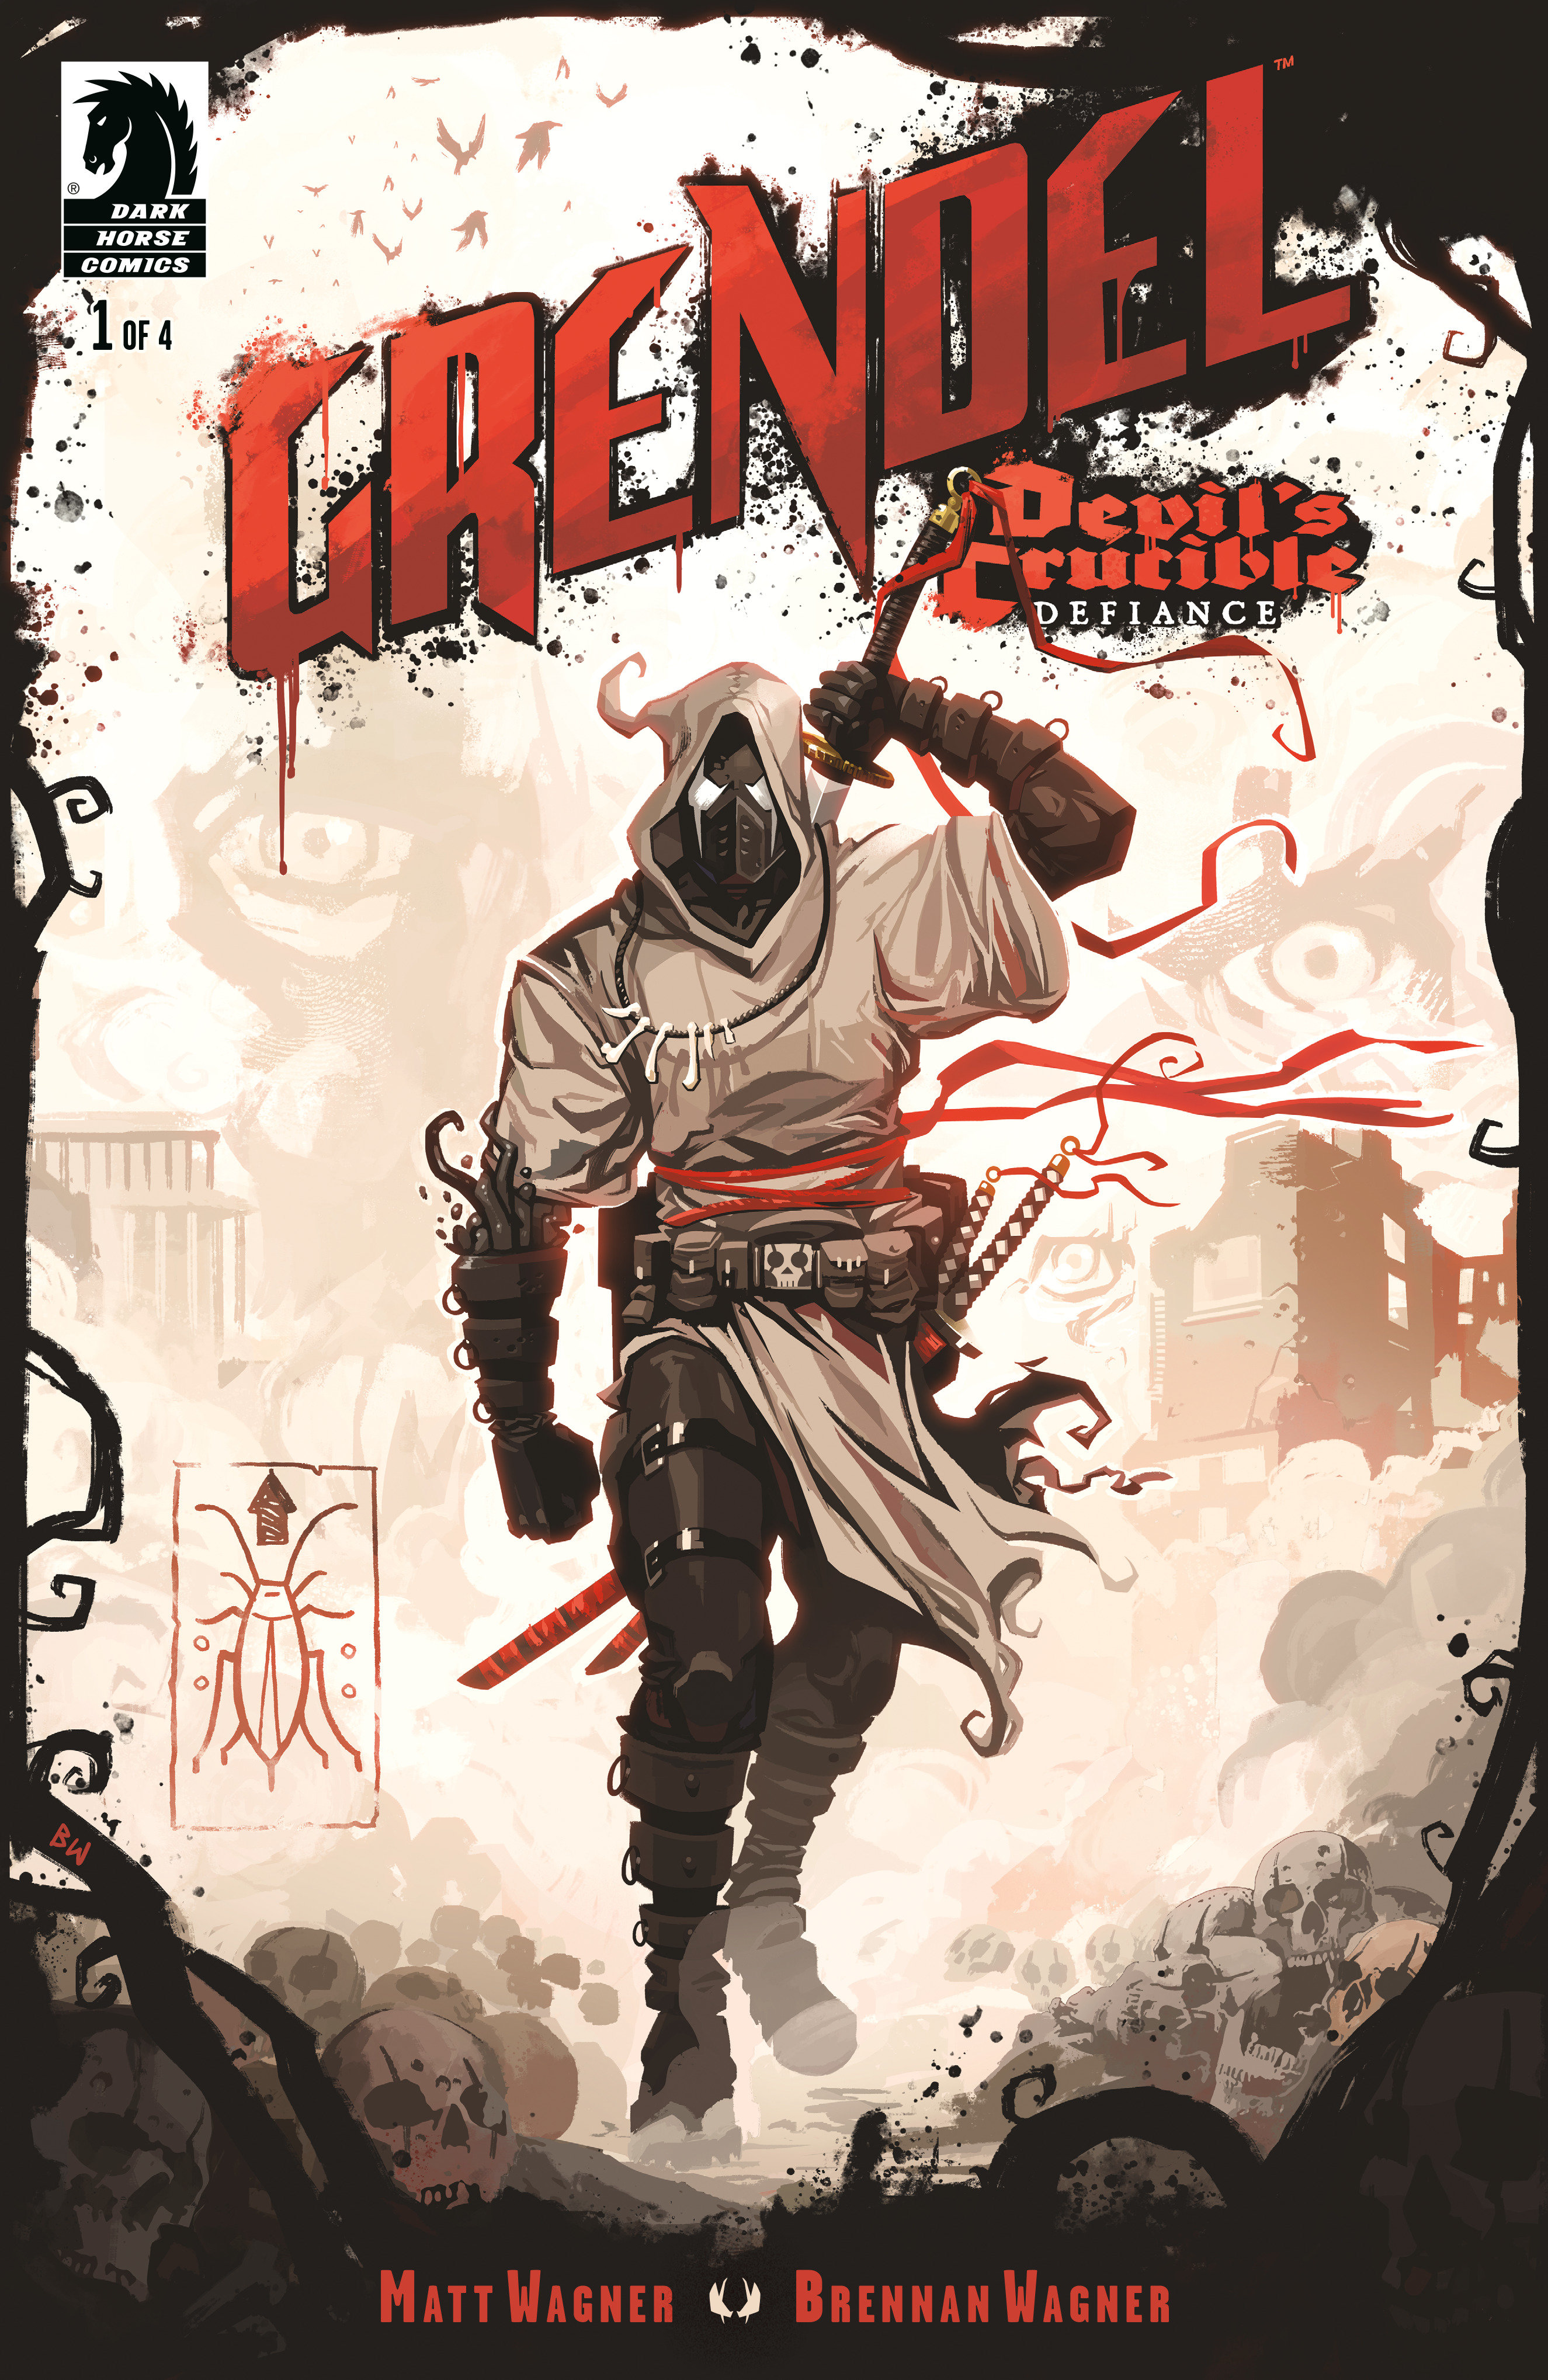 Grendel: Devil's Crucible Defiance #1 Cover B (Brennan Wagner)